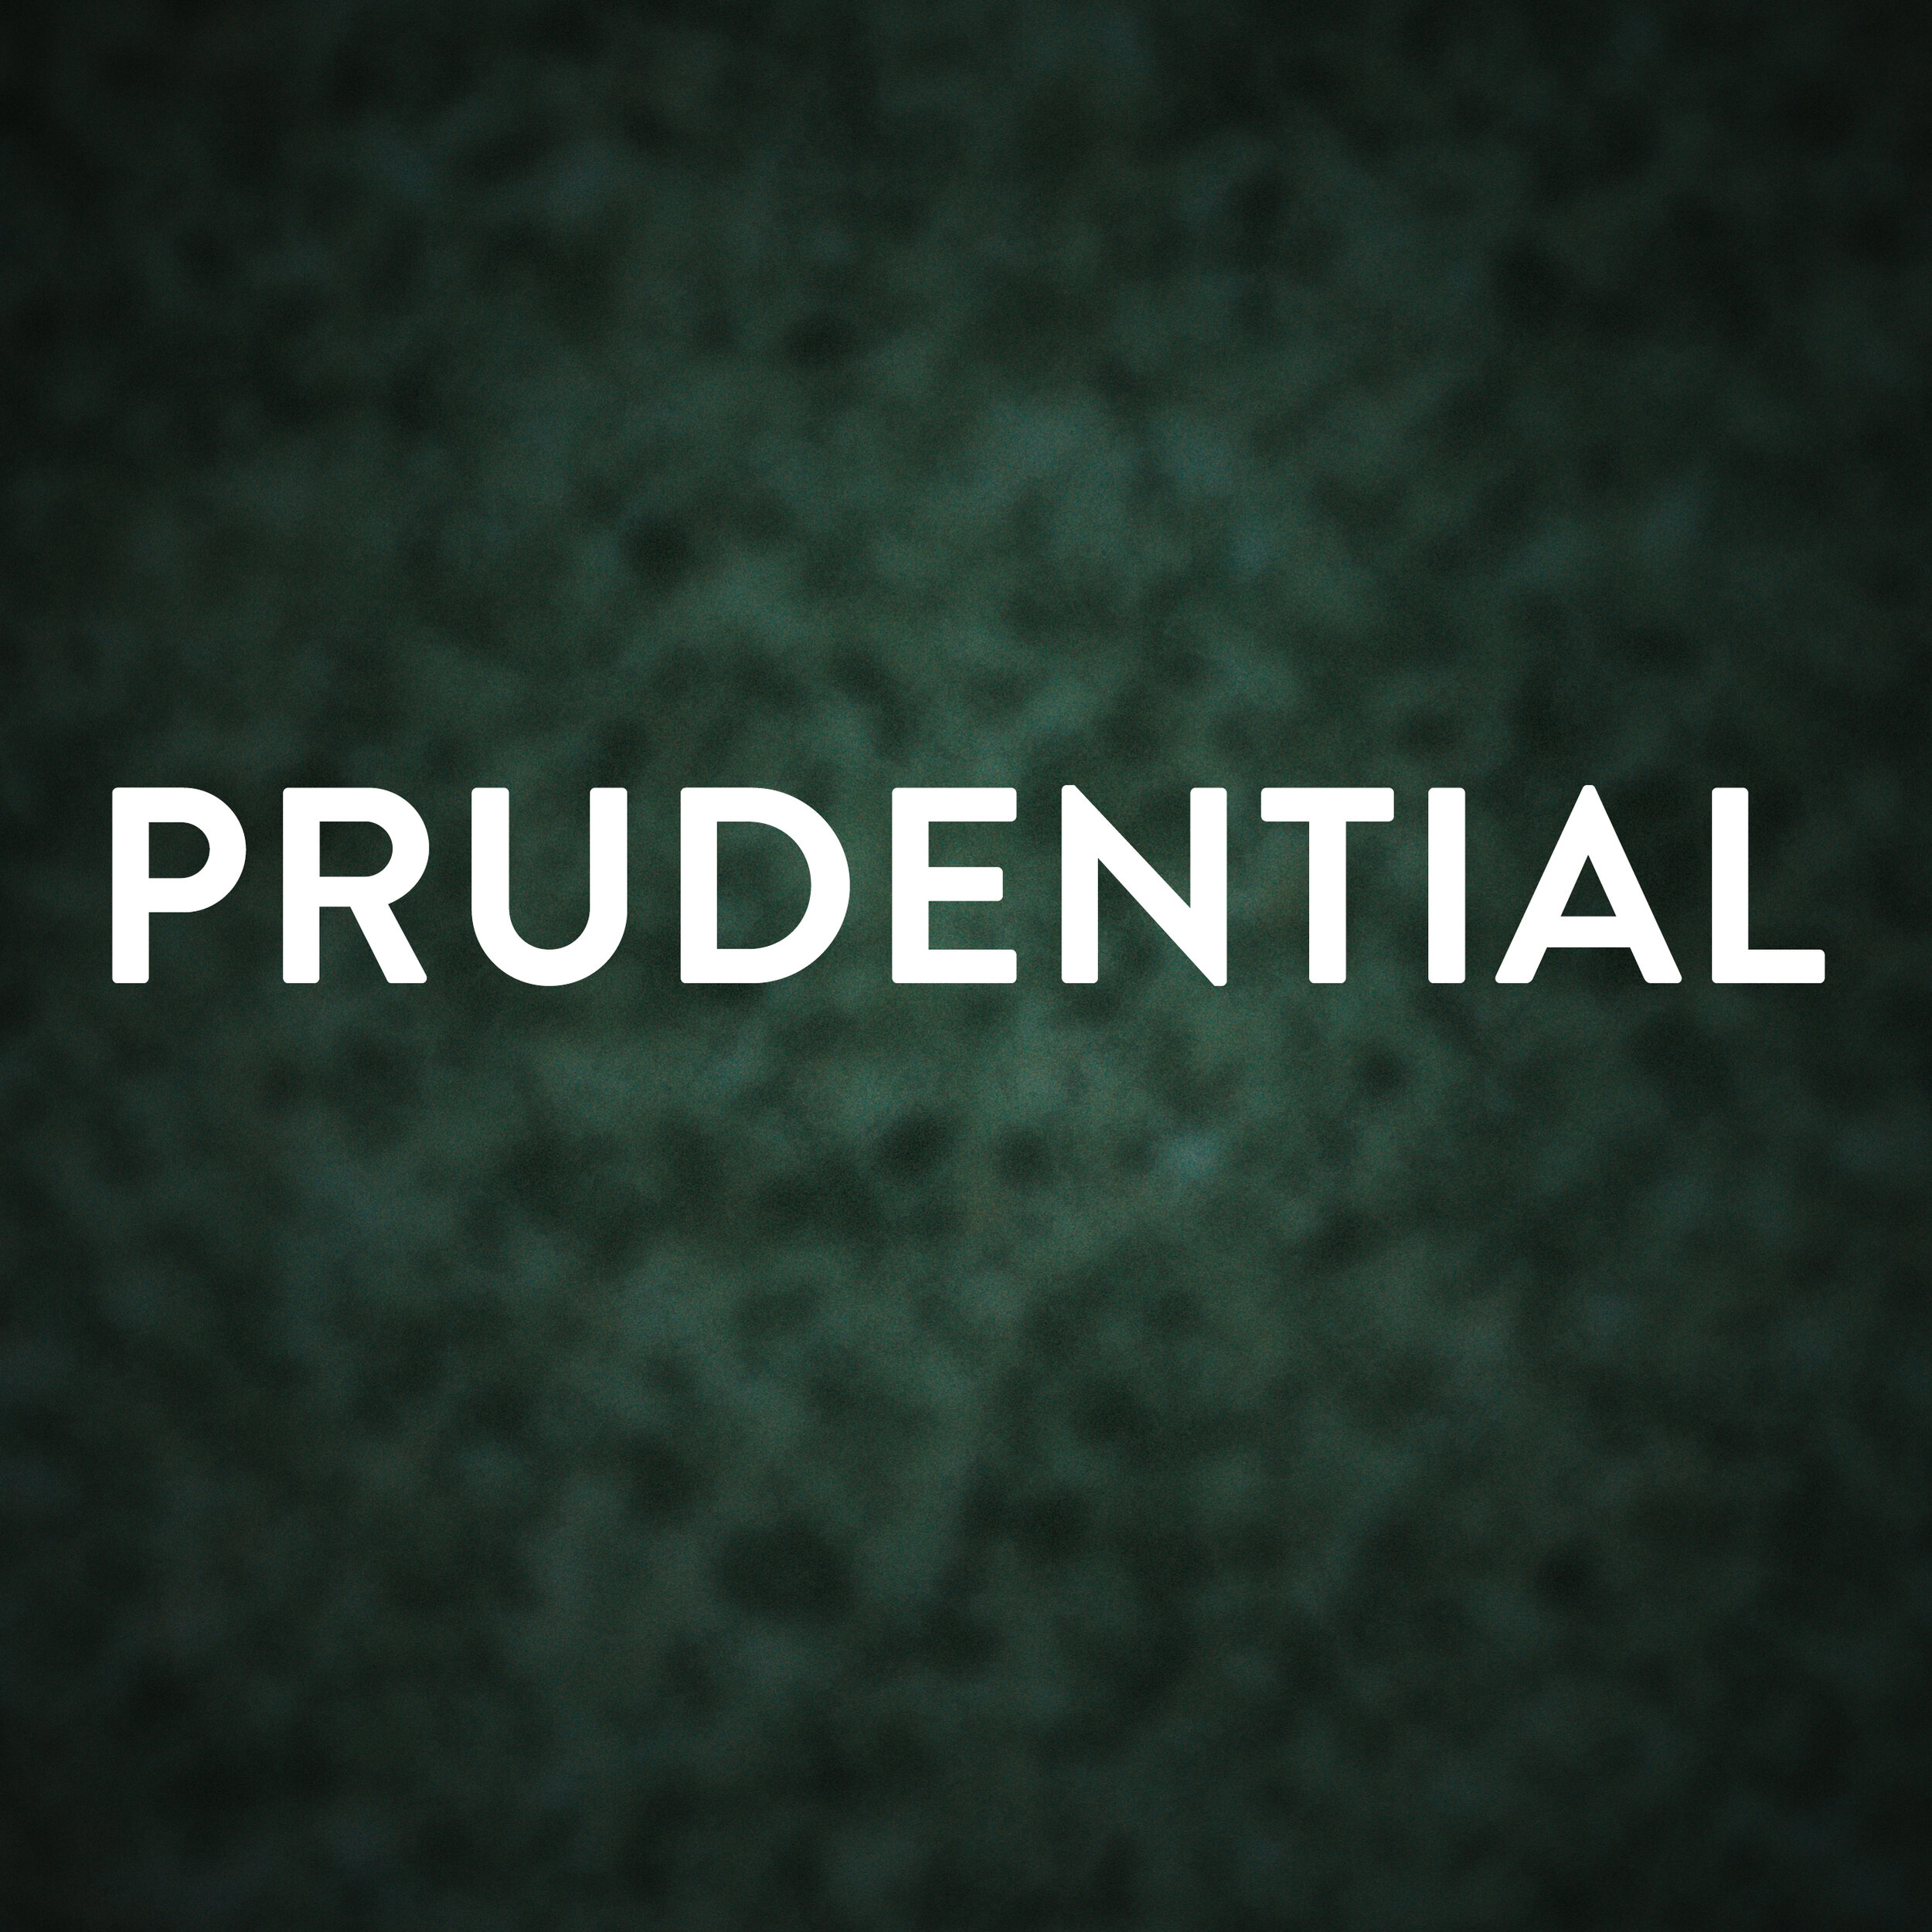 Prudential.jpg